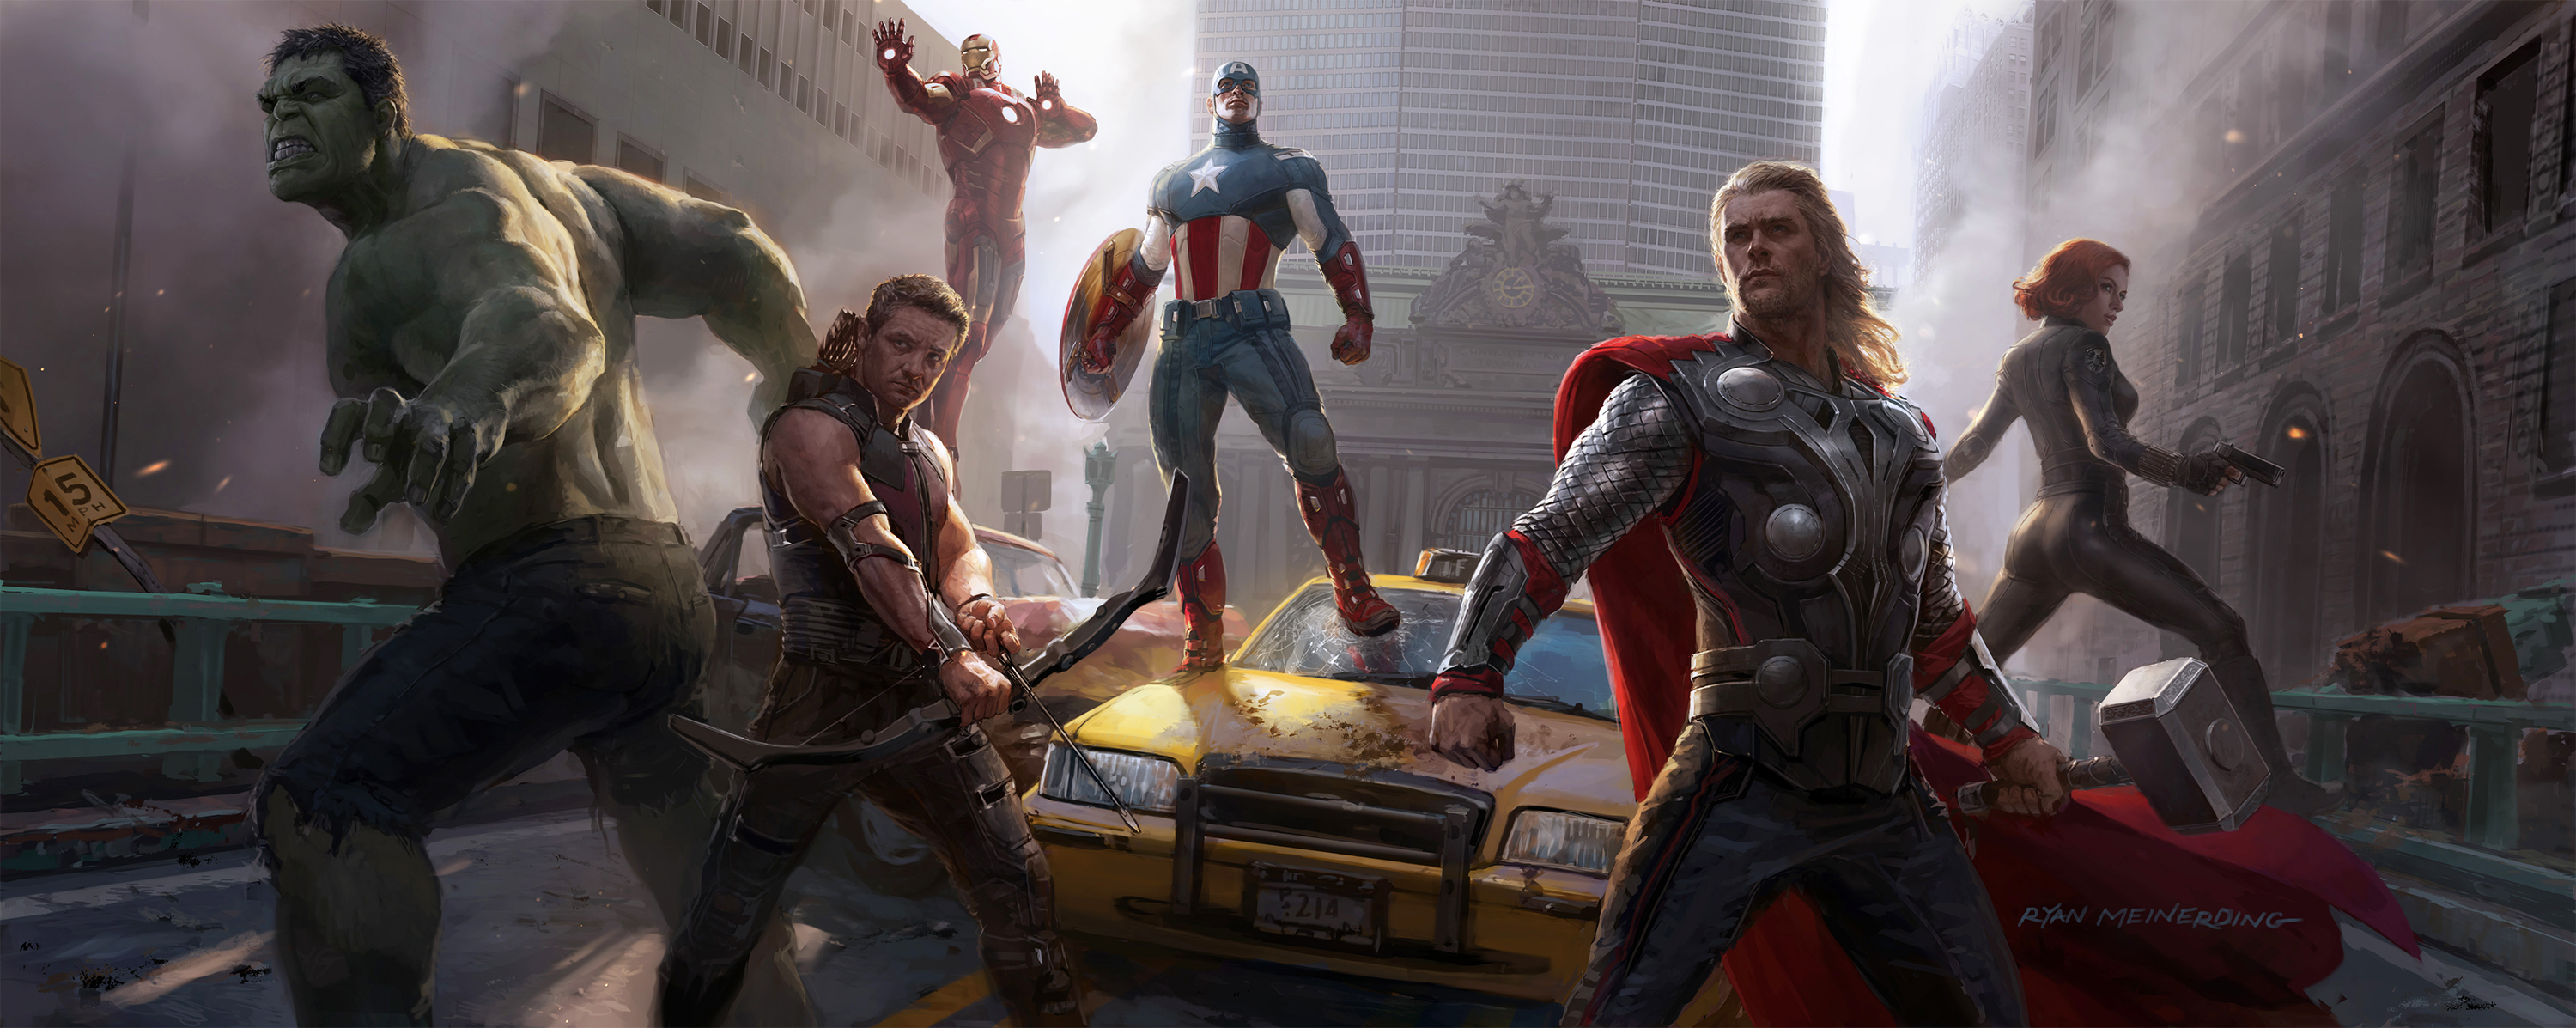 Concept-art de Ryan Meinerding pour le film The Avengers